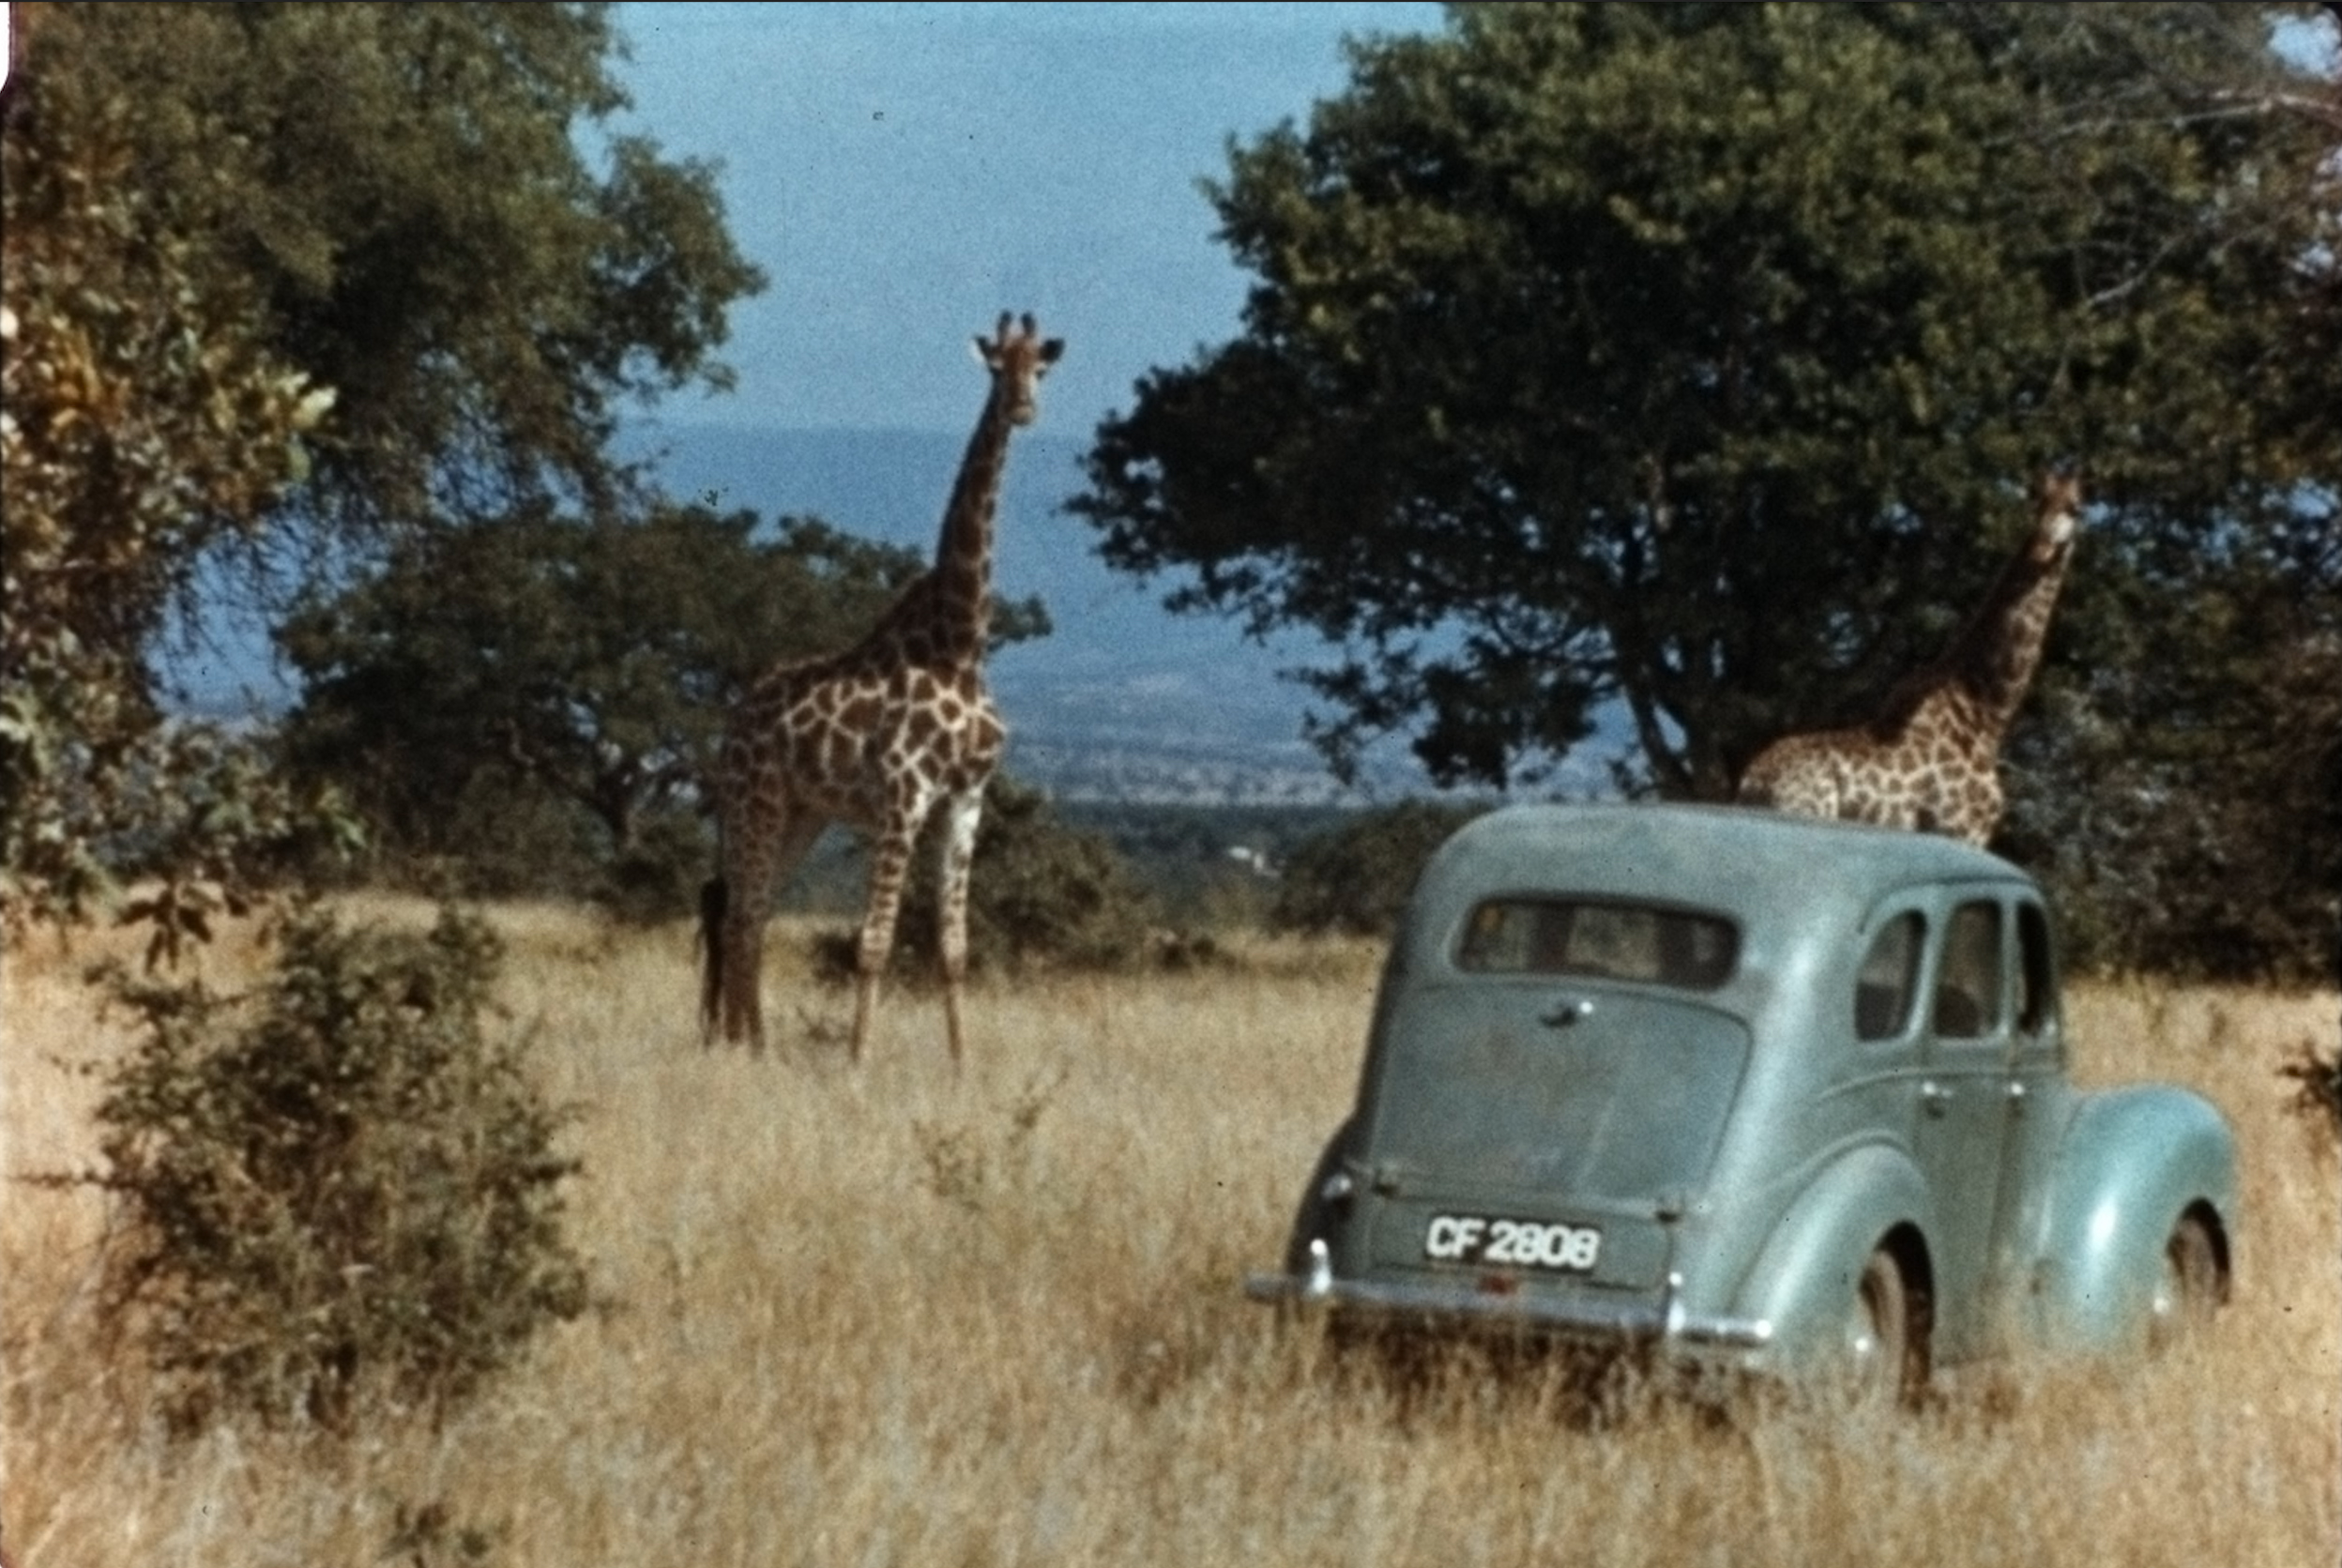 Dr. Anne Innis Dagg in Africa studying giraffes